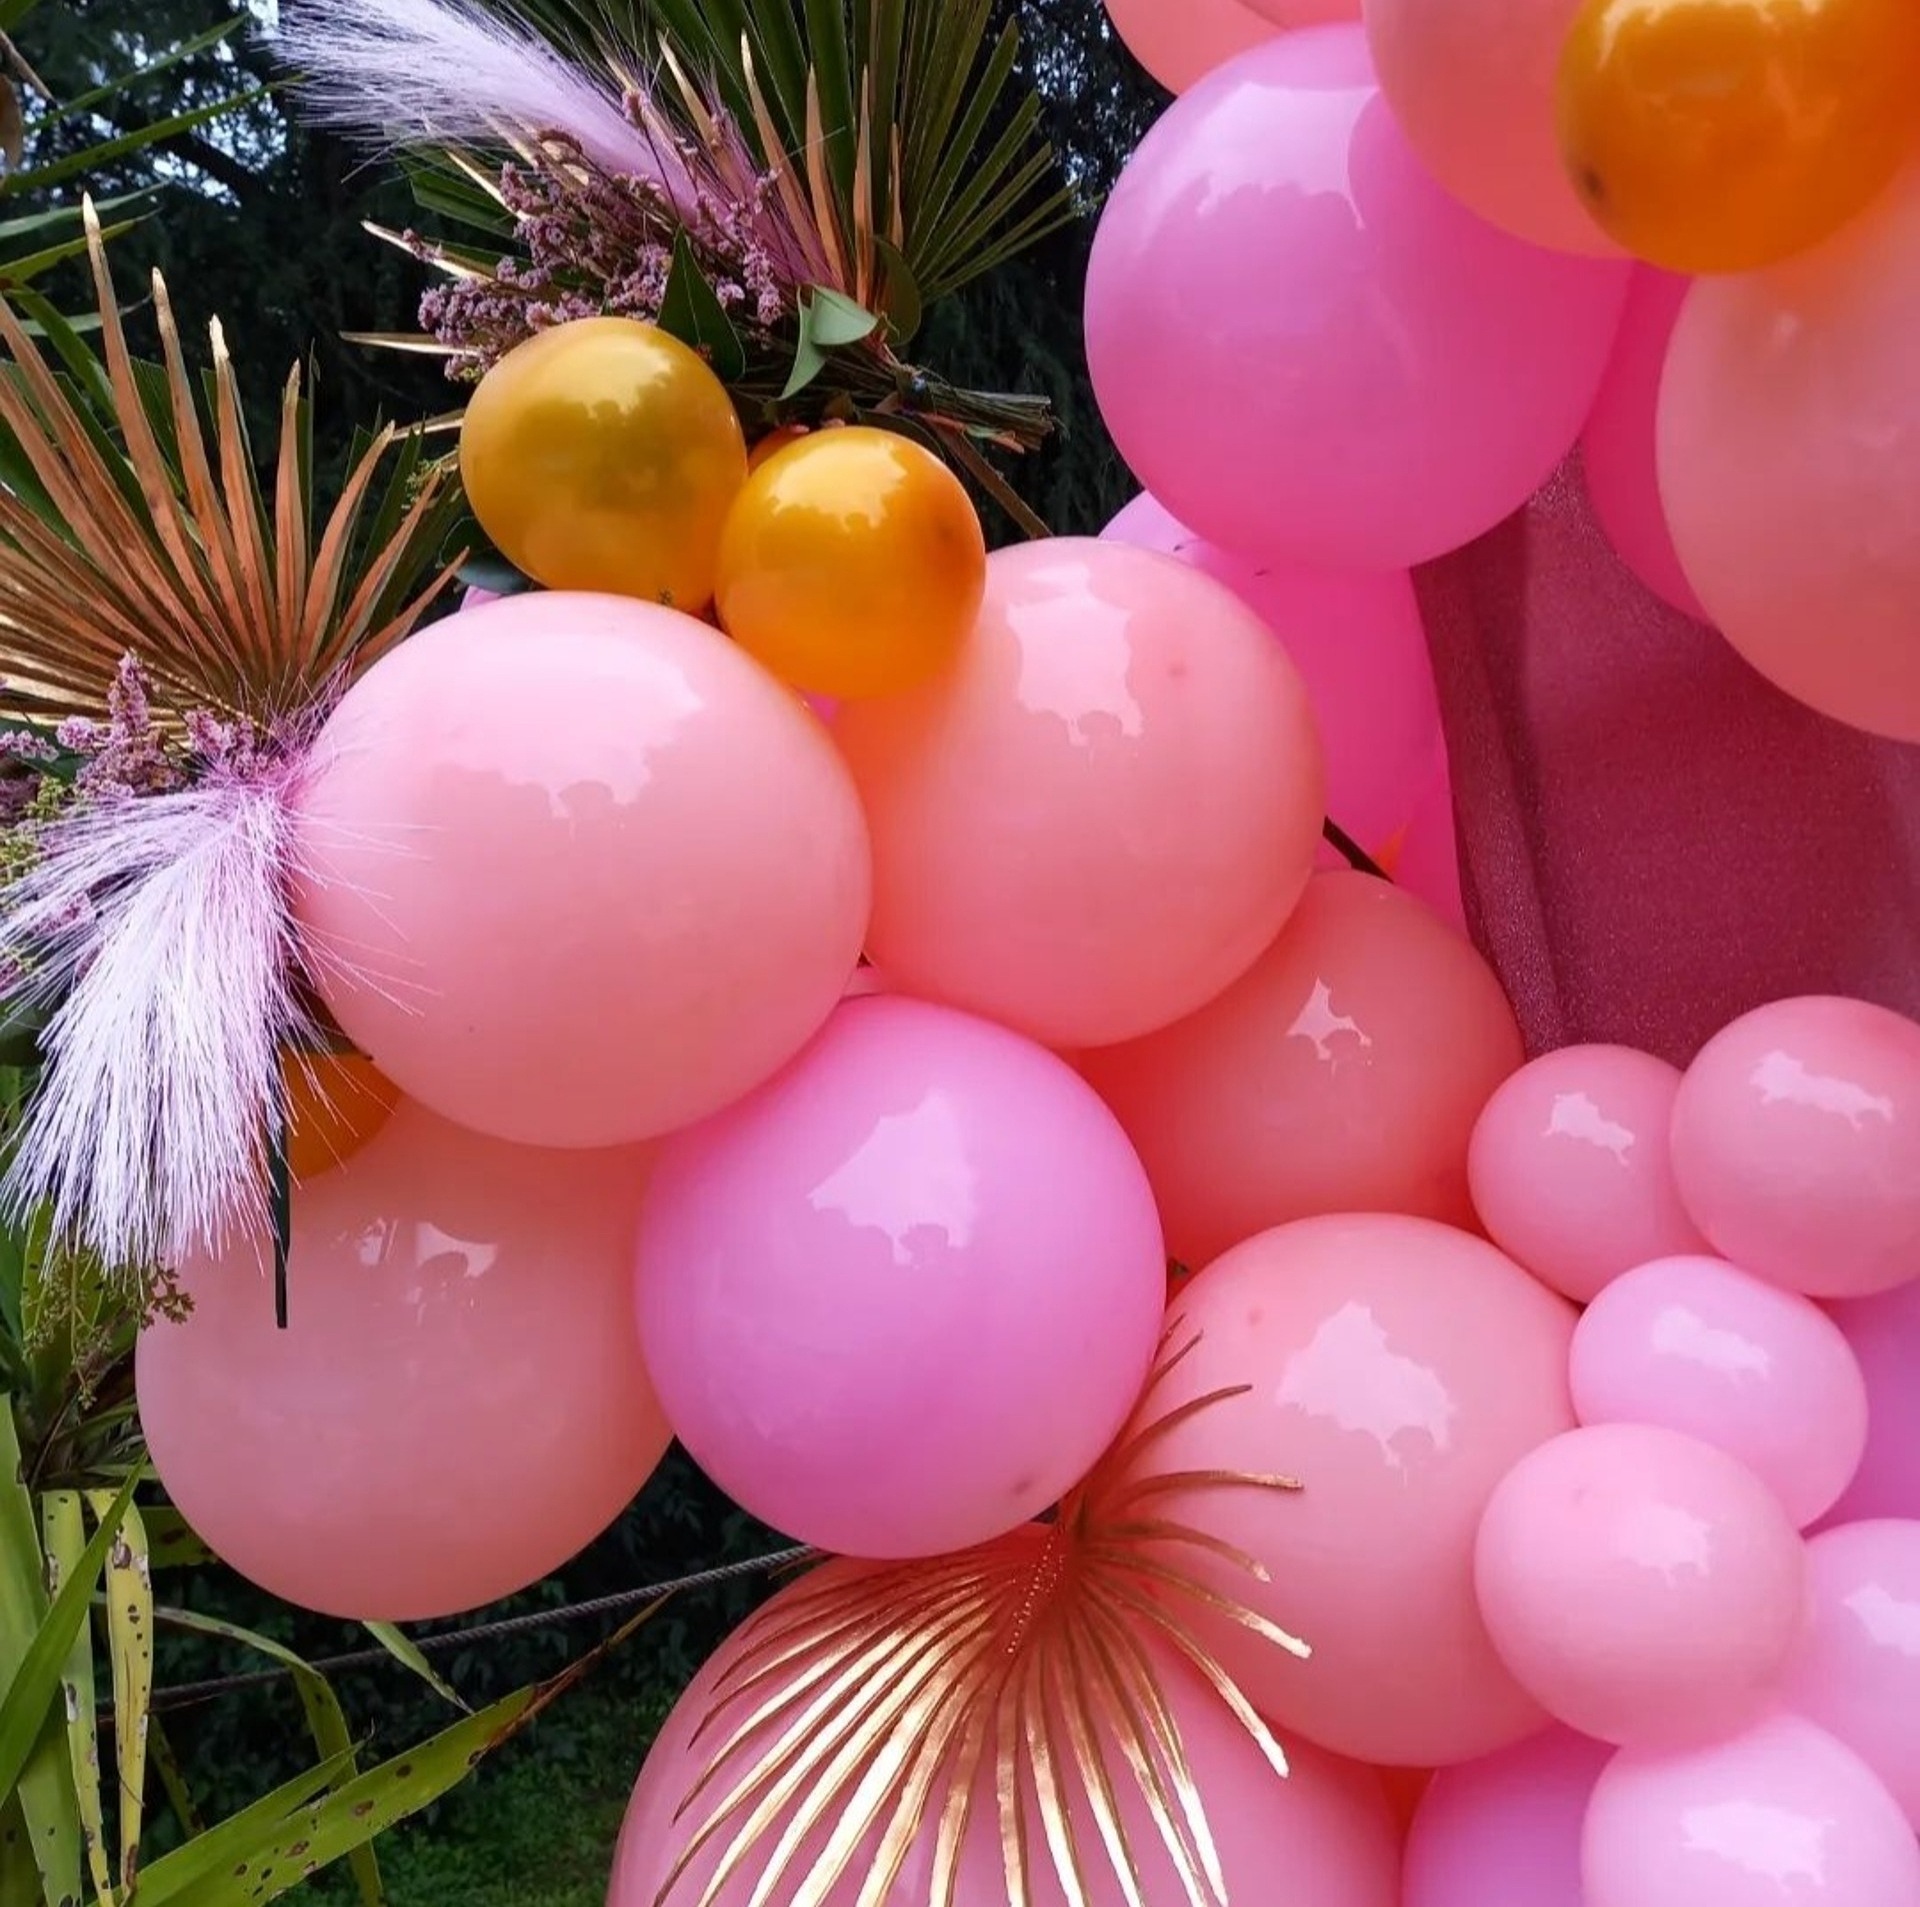 Eventi, bomboniere e allestimenti balloon art vendita on line